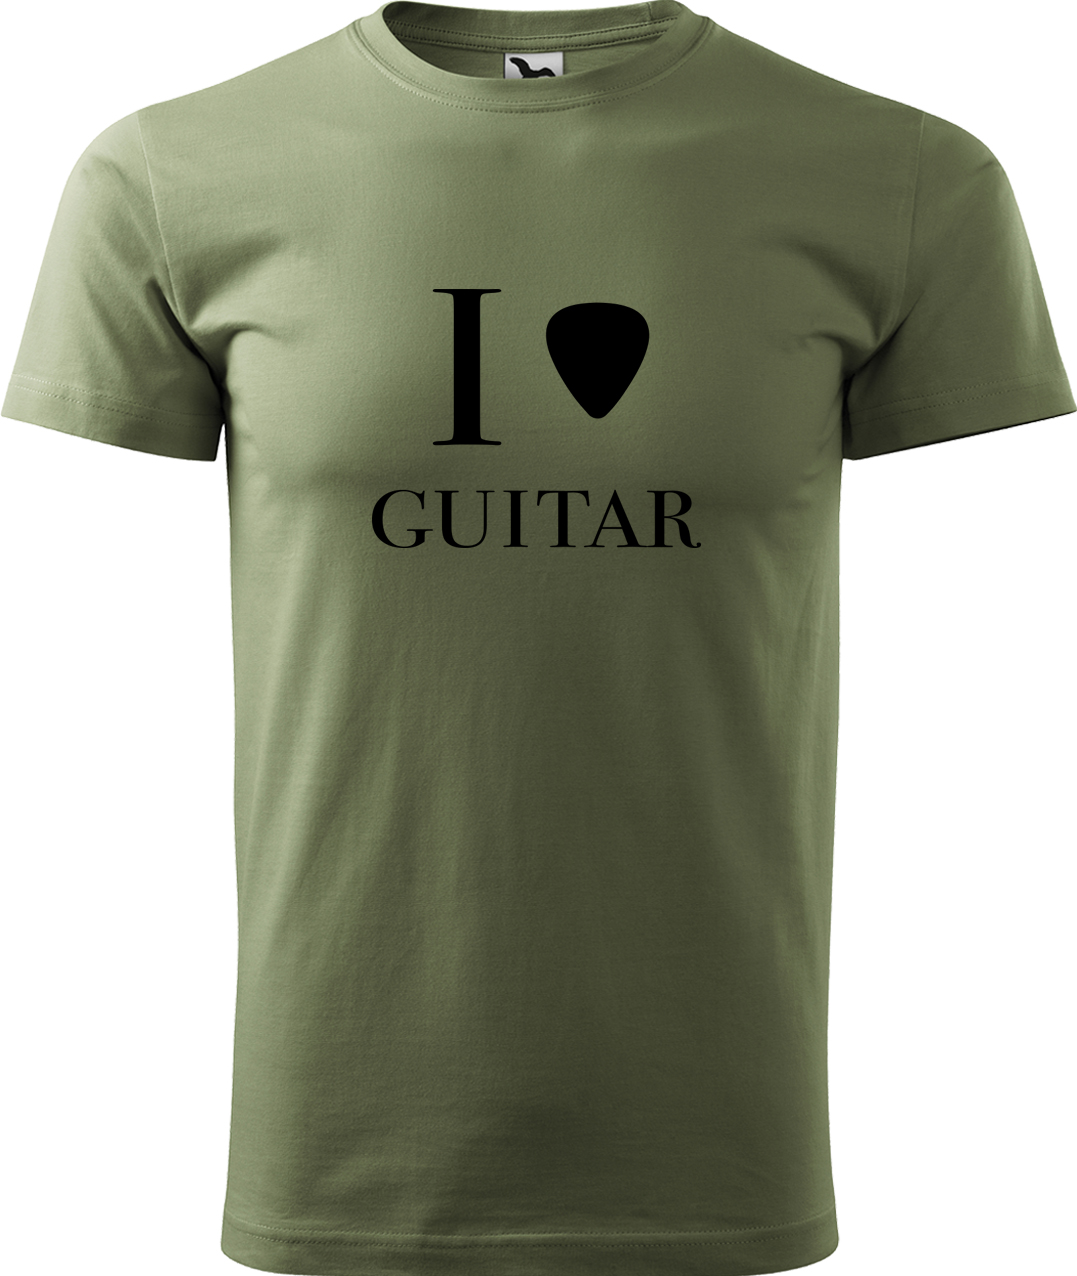 Pánské tričko s kytarou - I love guitar Velikost: 4XL, Barva: Světlá khaki (28), Střih: pánský